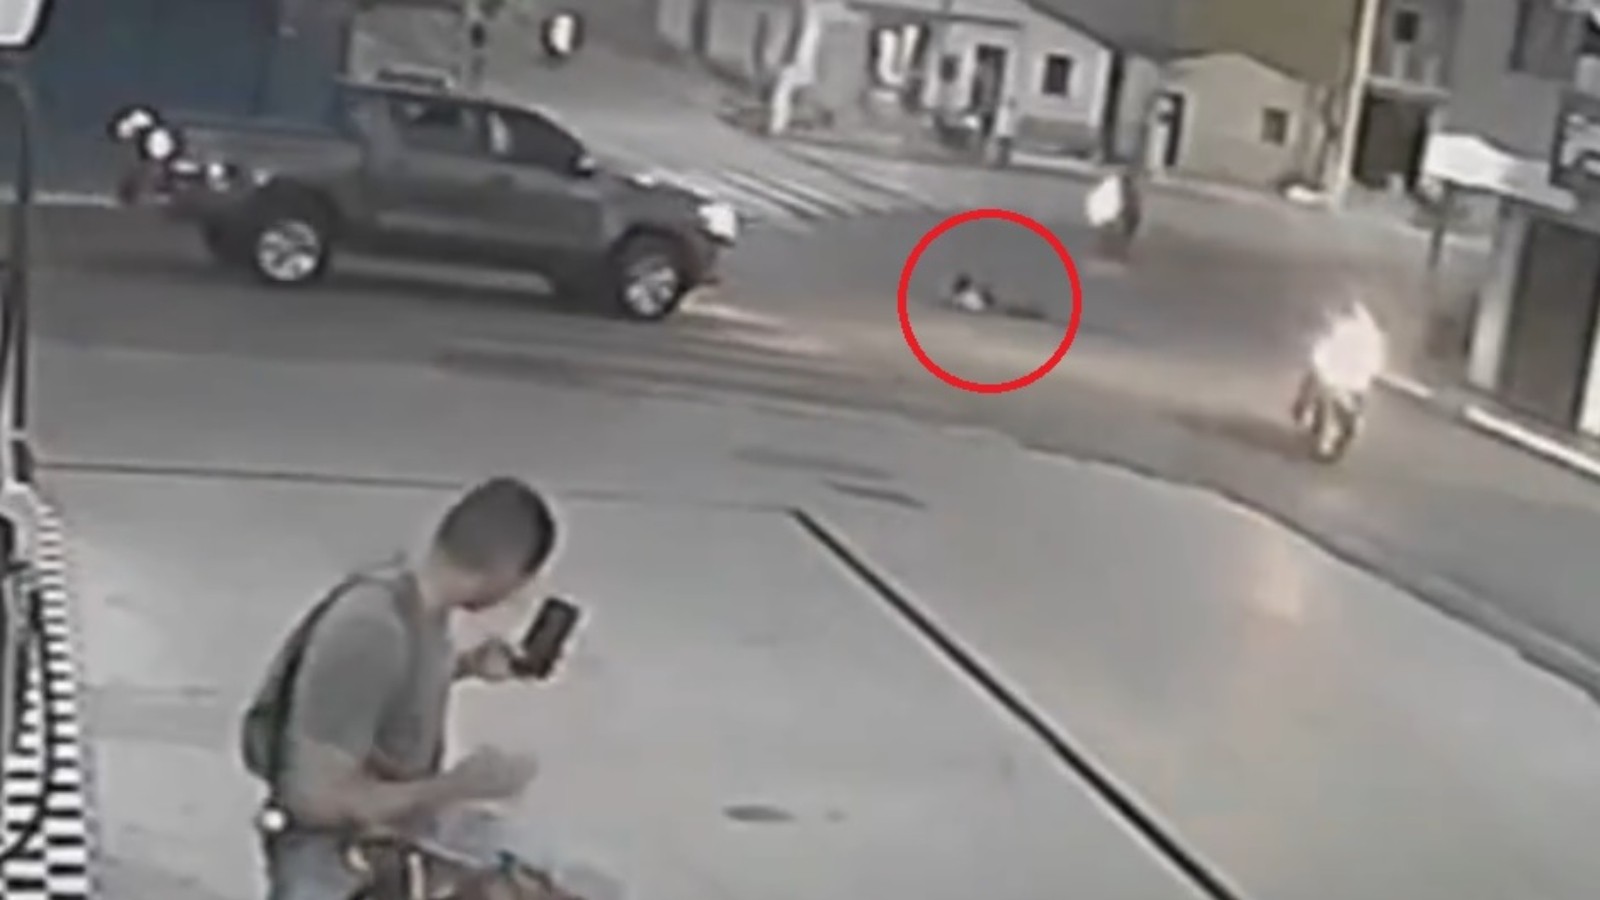 Homem que sobreviveu após caminhonete passar por cima dele mostra ferimentos; veja vídeo